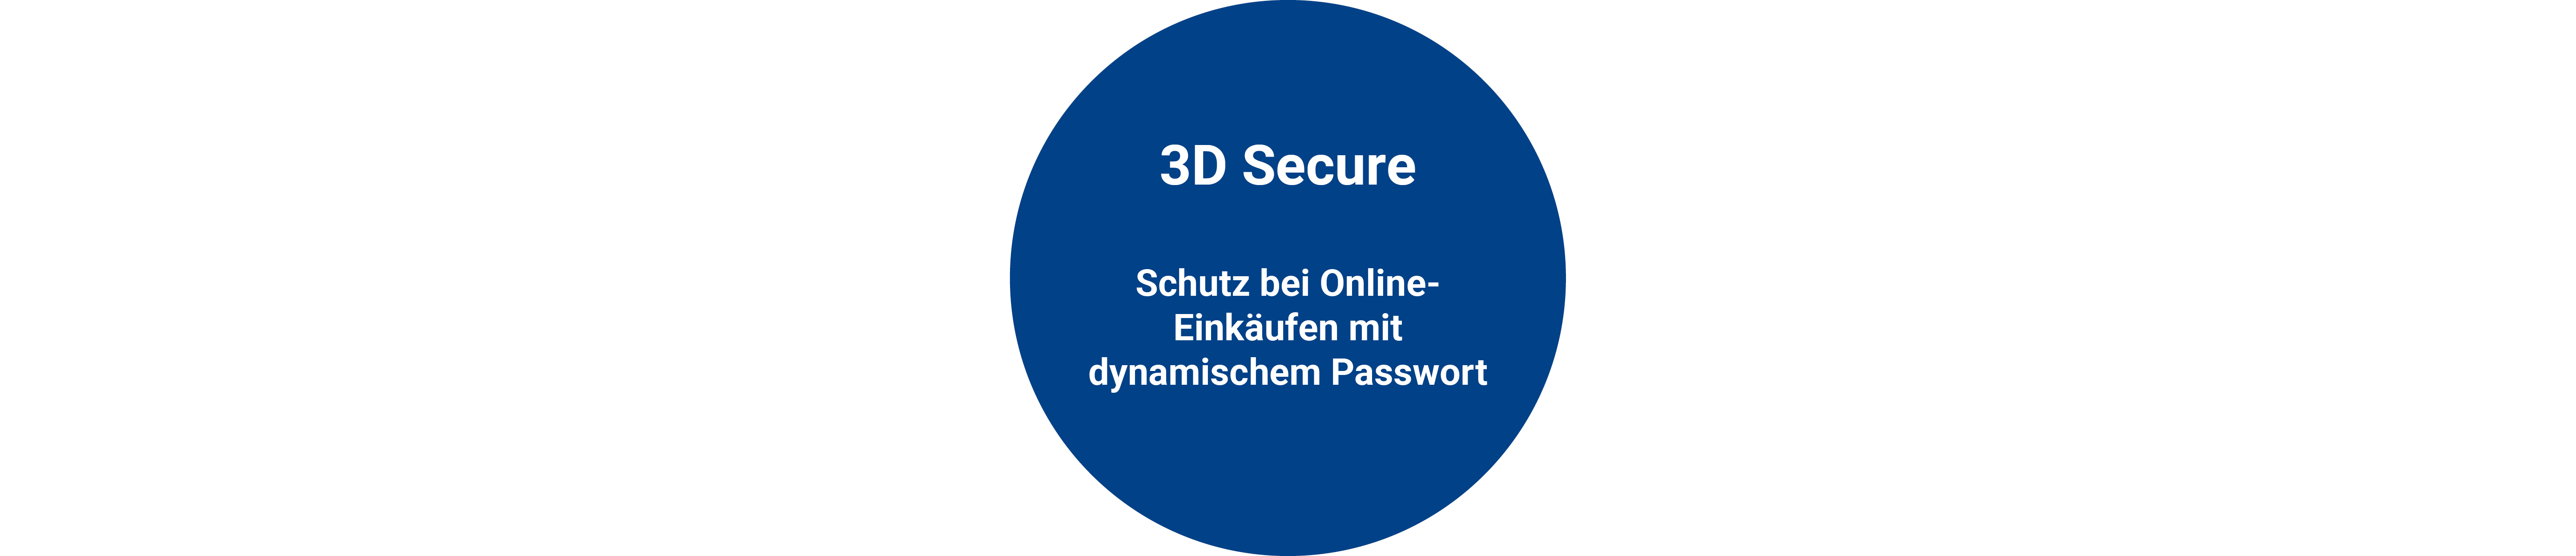 Blog_DE_3D-Secure-3D-Kreis